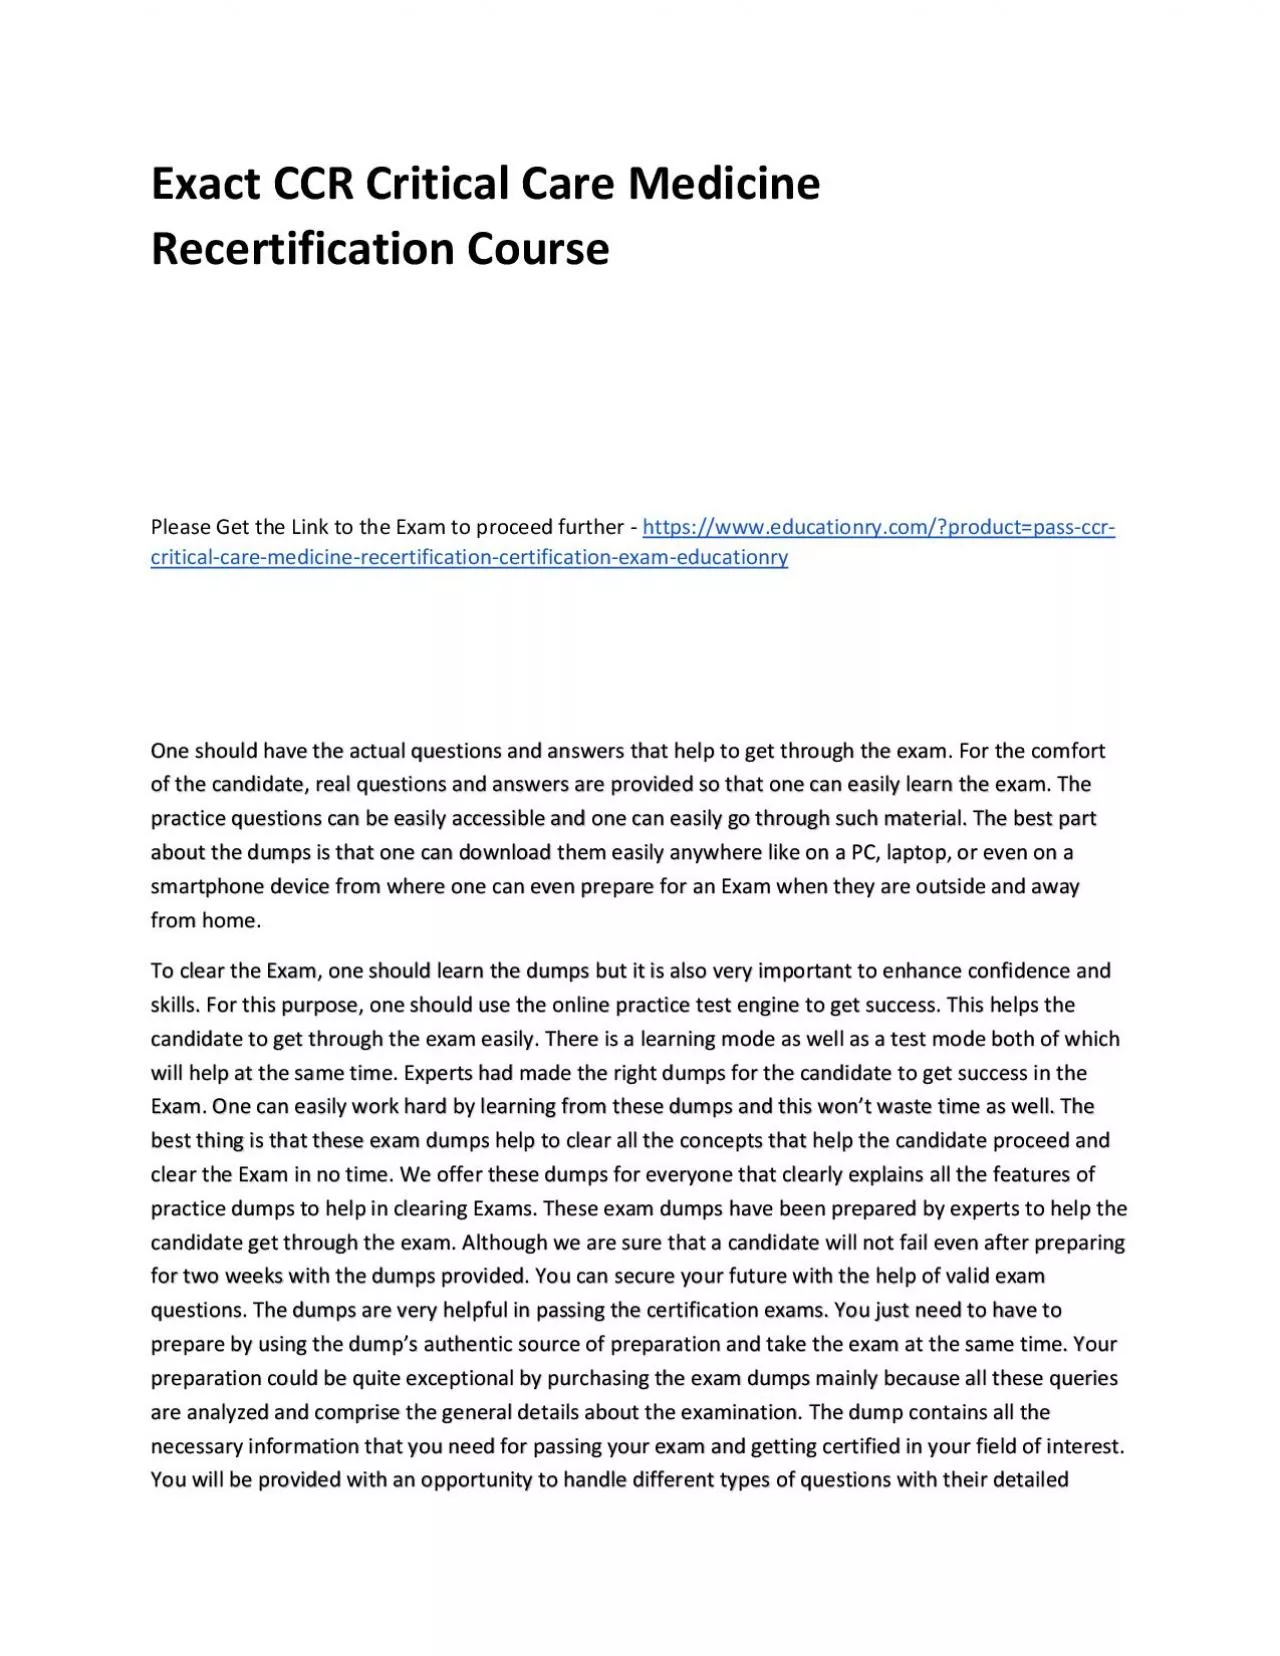 Exact CCR Critical Care Medicine Recertification Practice Course